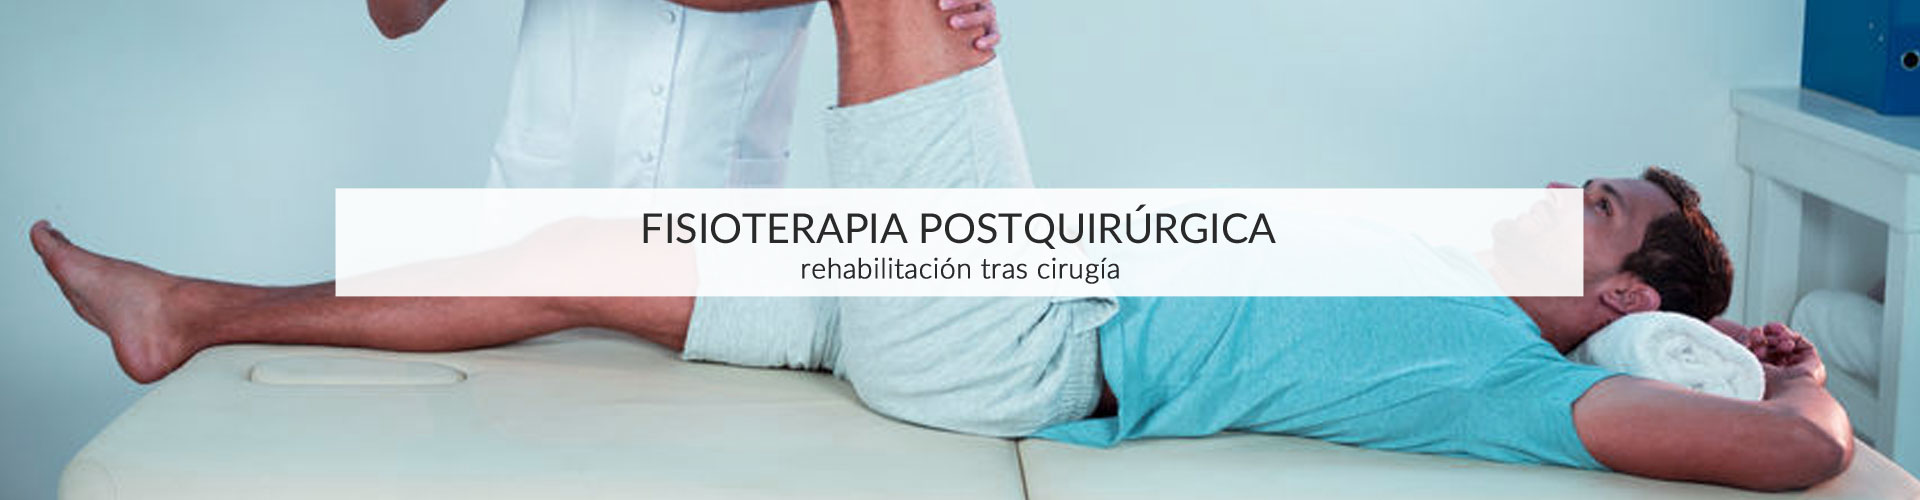 fisioterapia-postquirurgica